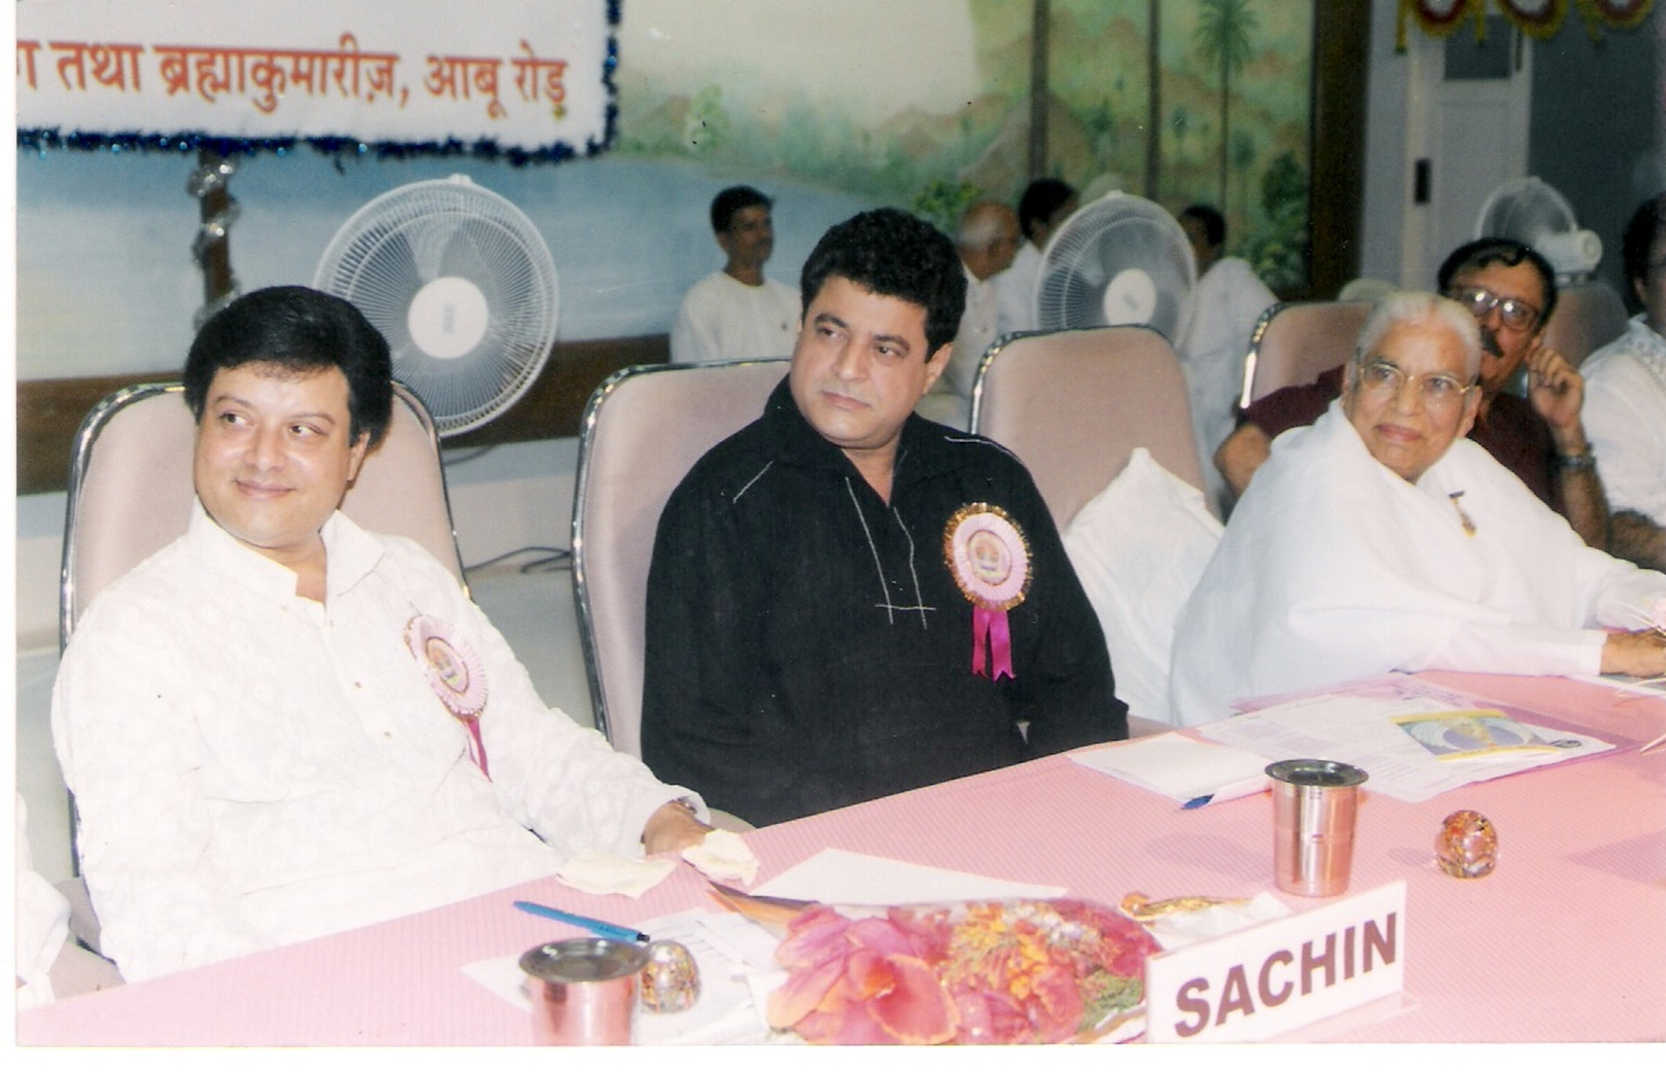 Sachin director at brahmakumaris